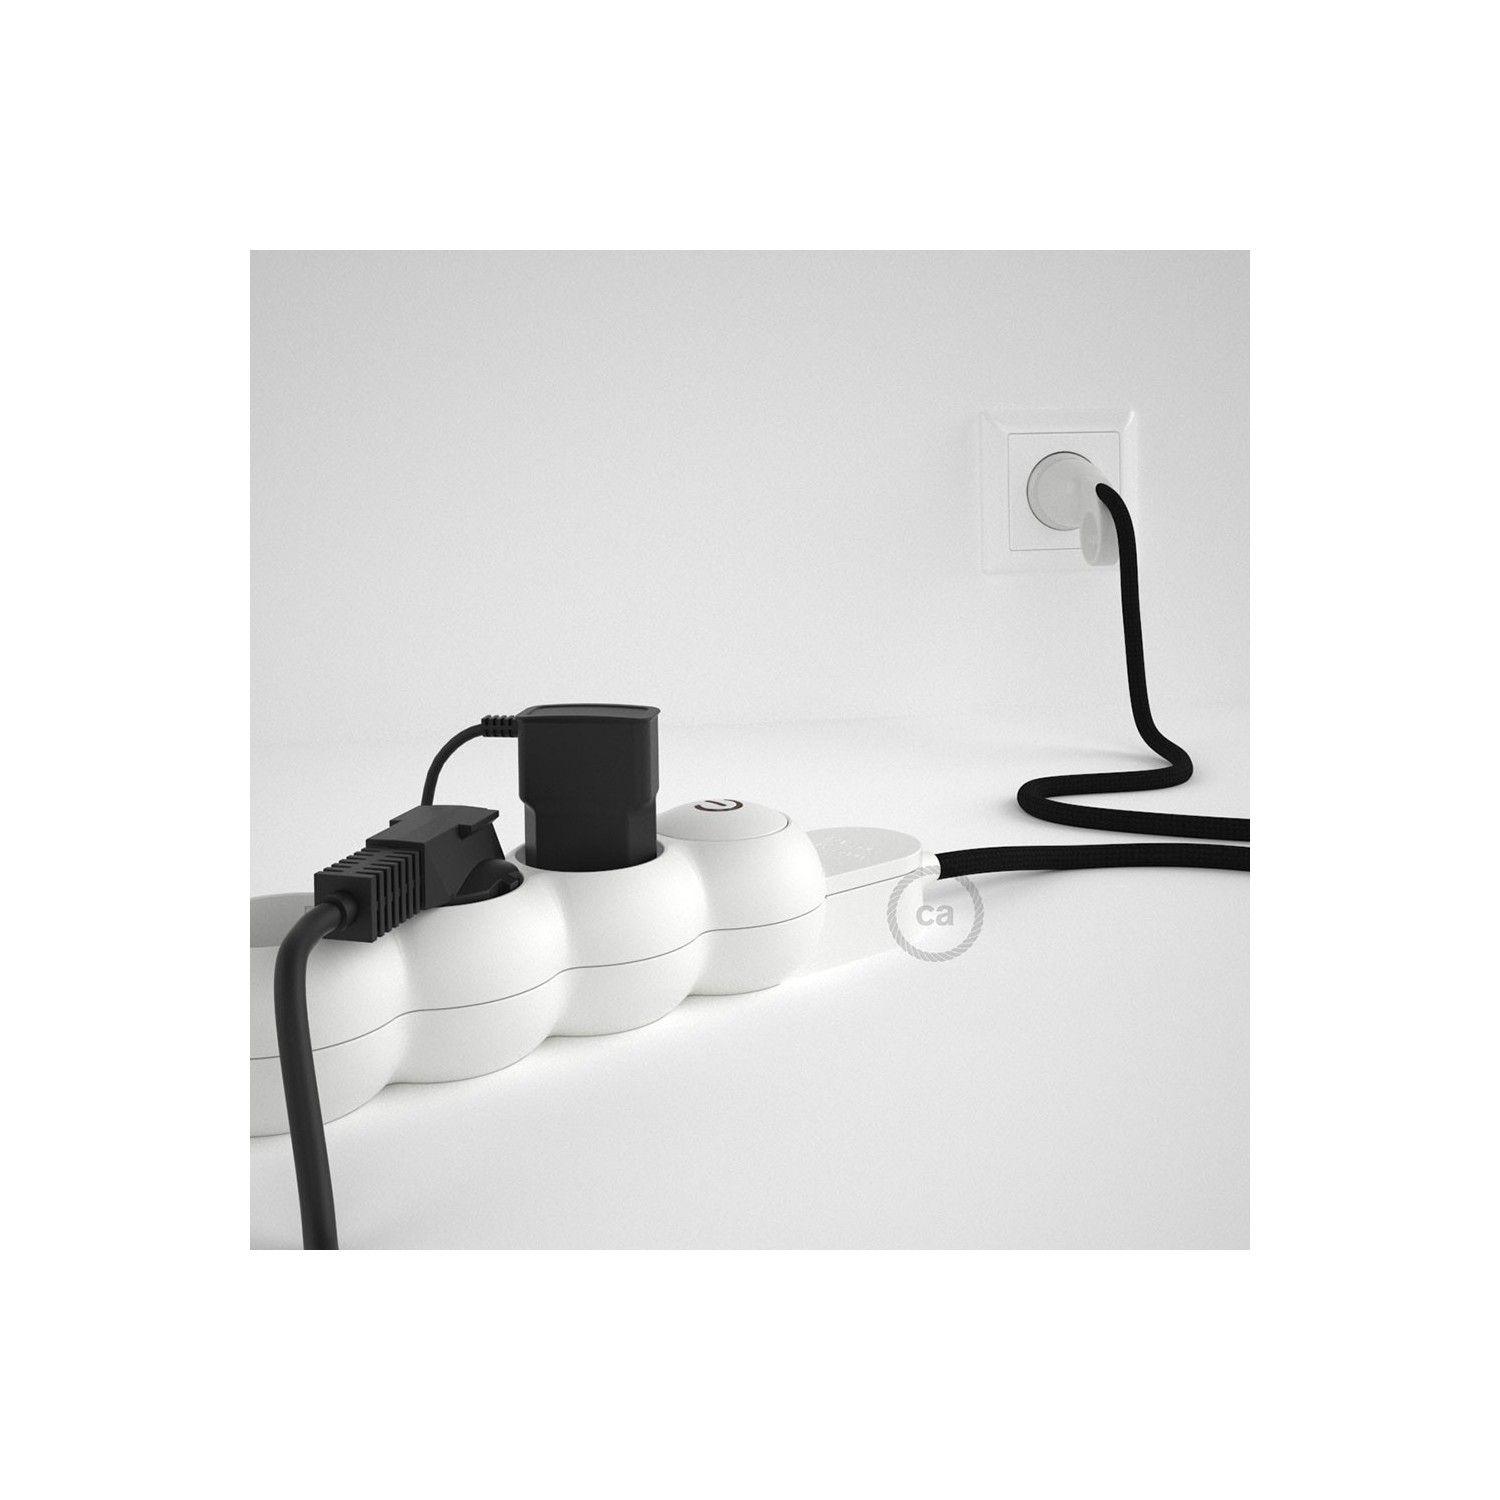 Prodlužovací textilný elektrický kabel - RM04 černý - se 4 zásuvkami a Schuko zástrčkou.